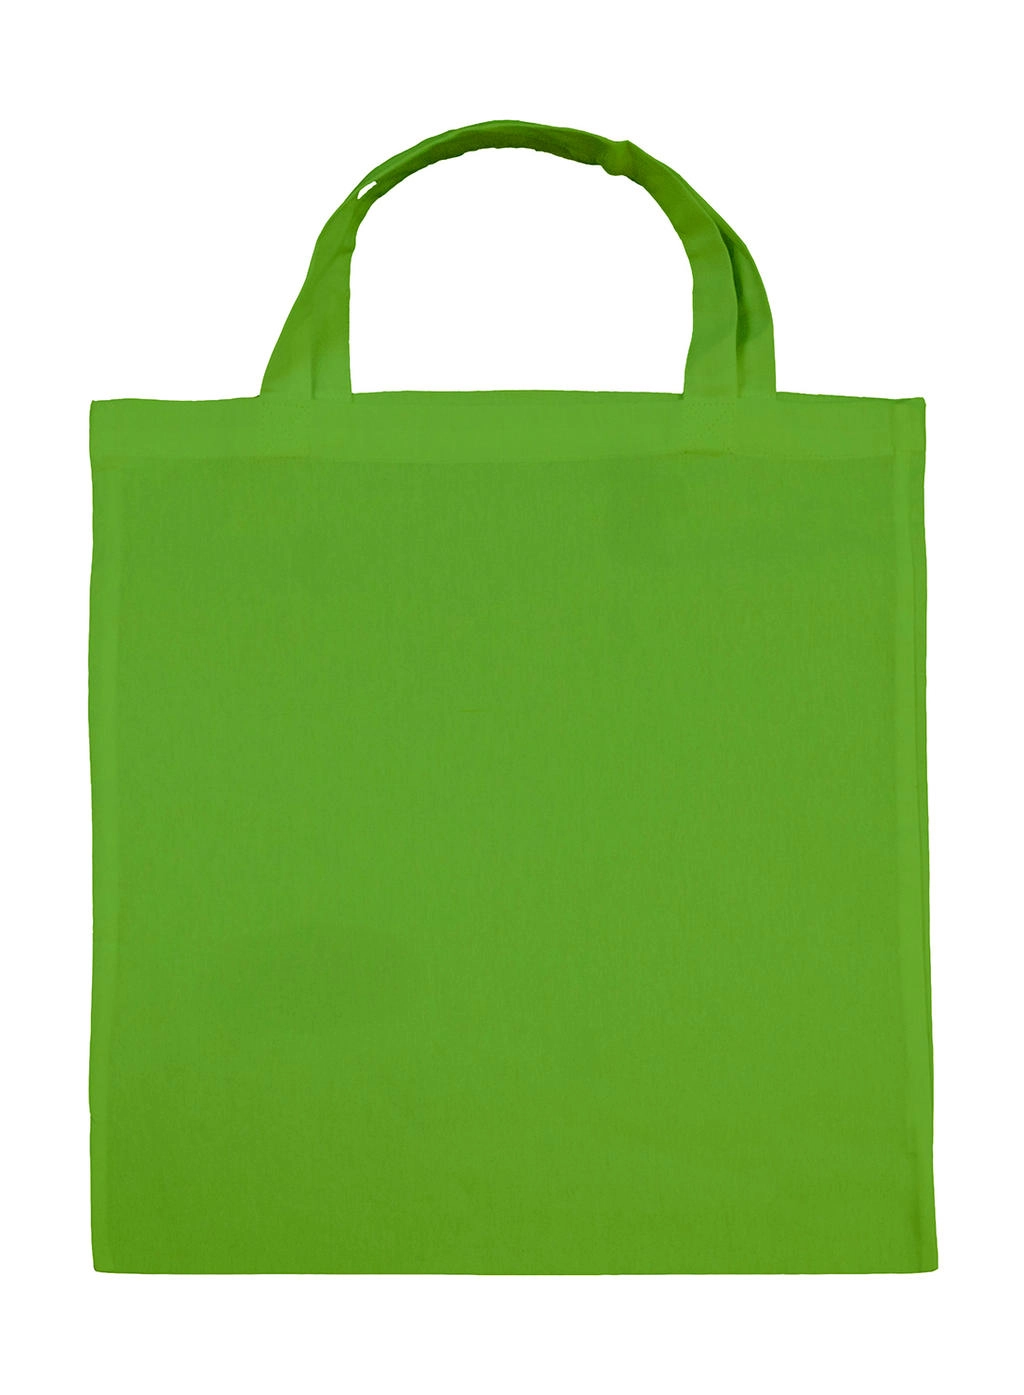 Cotton Shopper SH zum Besticken und Bedrucken in der Farbe Light Green mit Ihren Logo, Schriftzug oder Motiv.